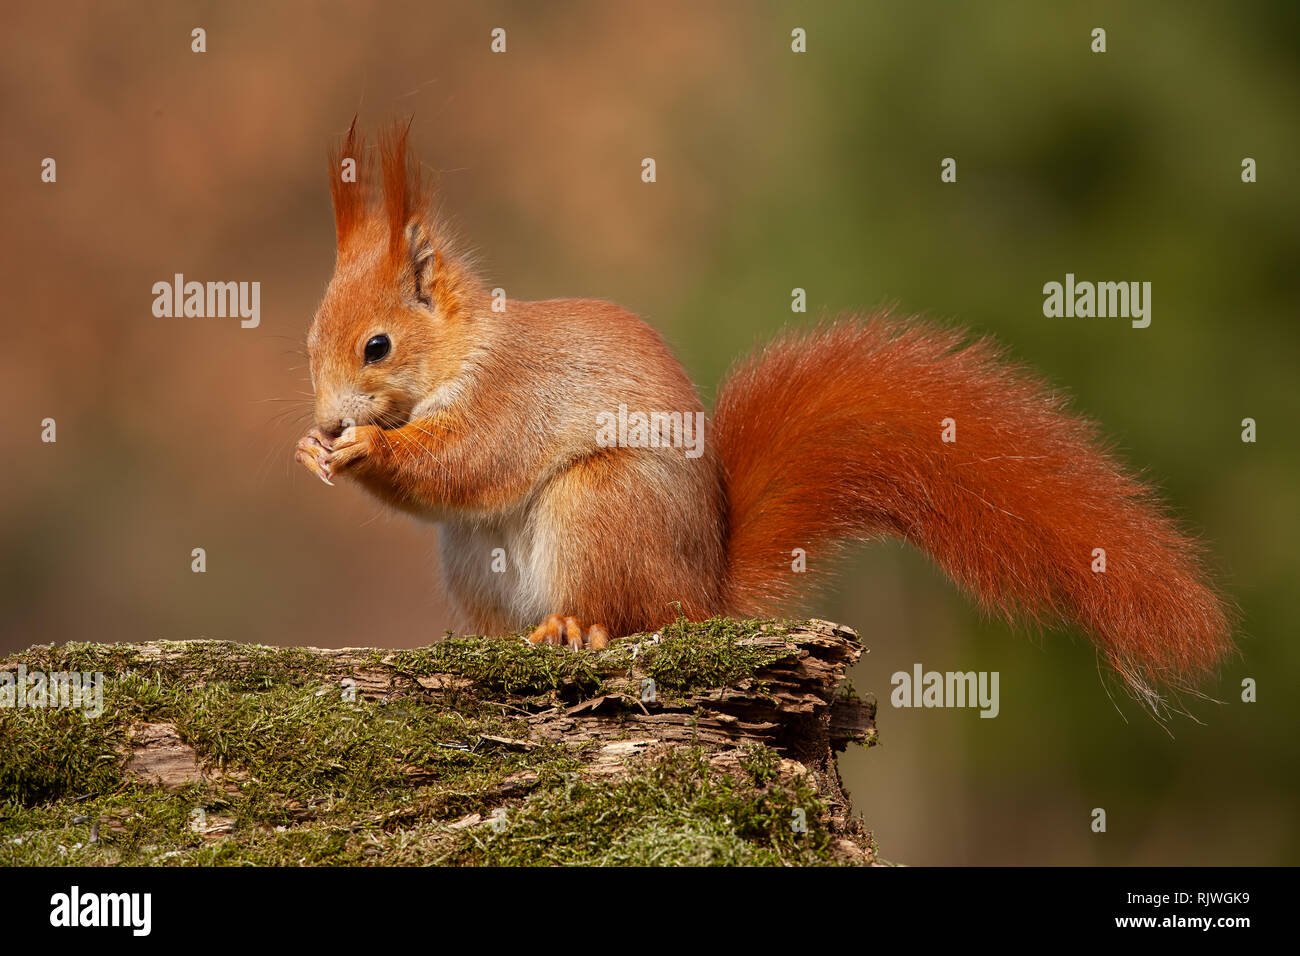 Eurasian écureuil roux, sciurus vulgaris, dans la forêt d'automne en lumière chaude. Banque D'Images